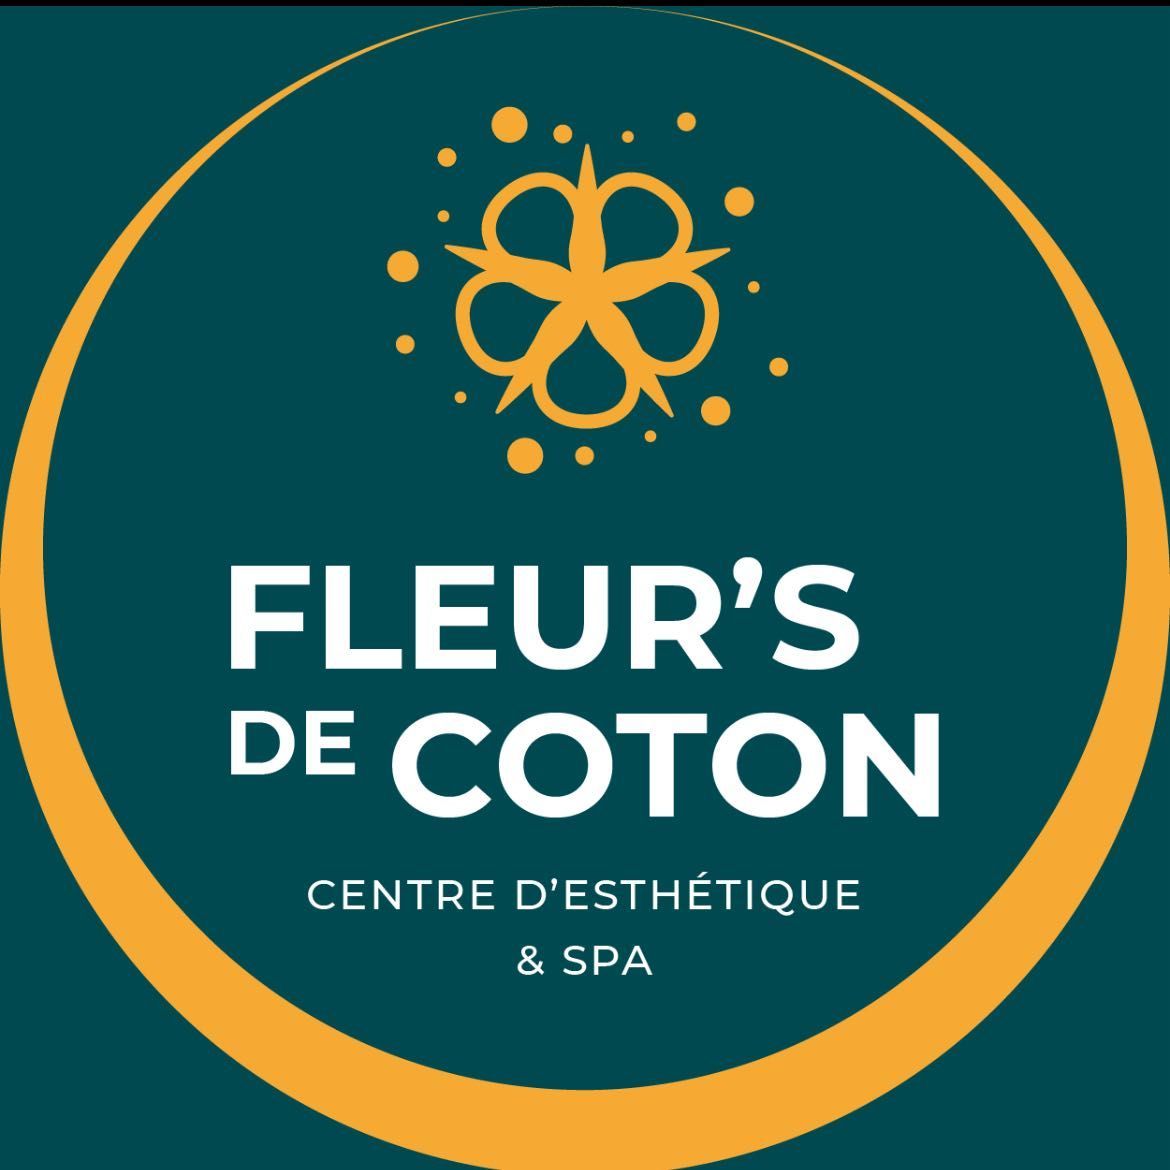 Fleur’s de coton Centre d’Esthétique, Morne vergain, 97139, Les Abymes